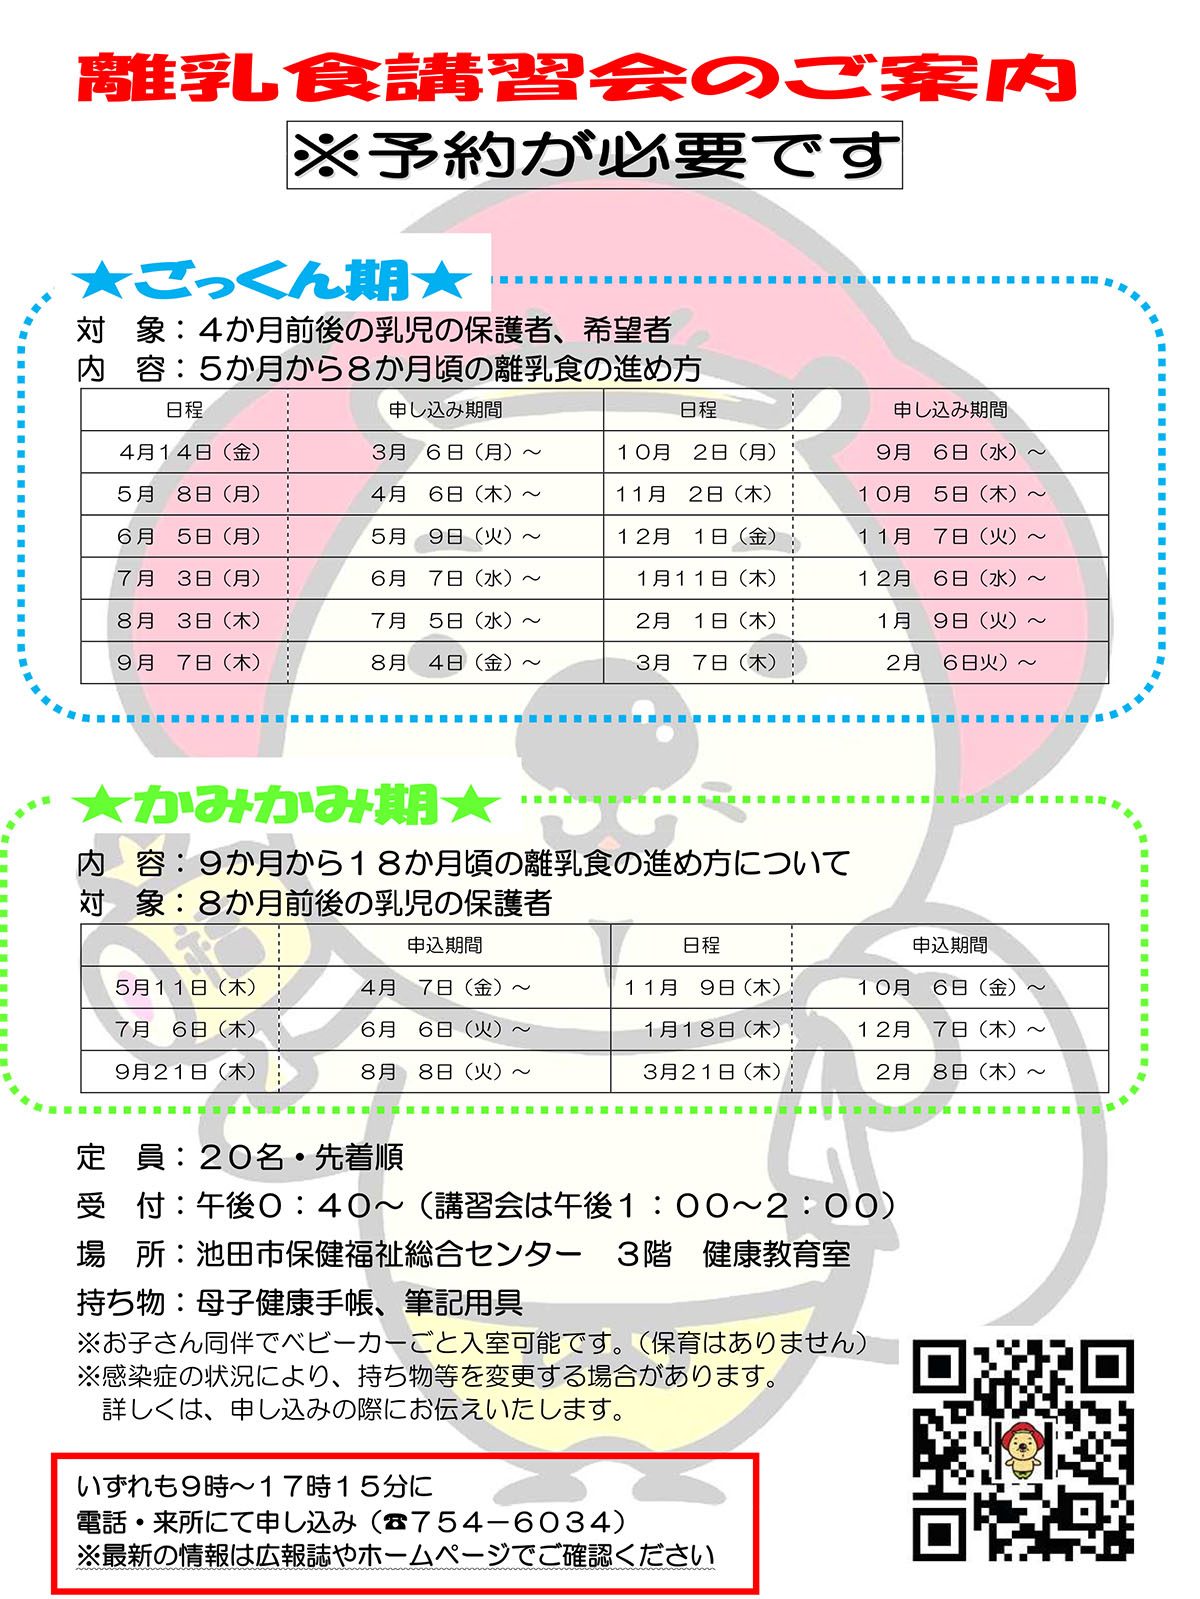 【予約制】離乳食講習会 6月5日開催ごっくん期